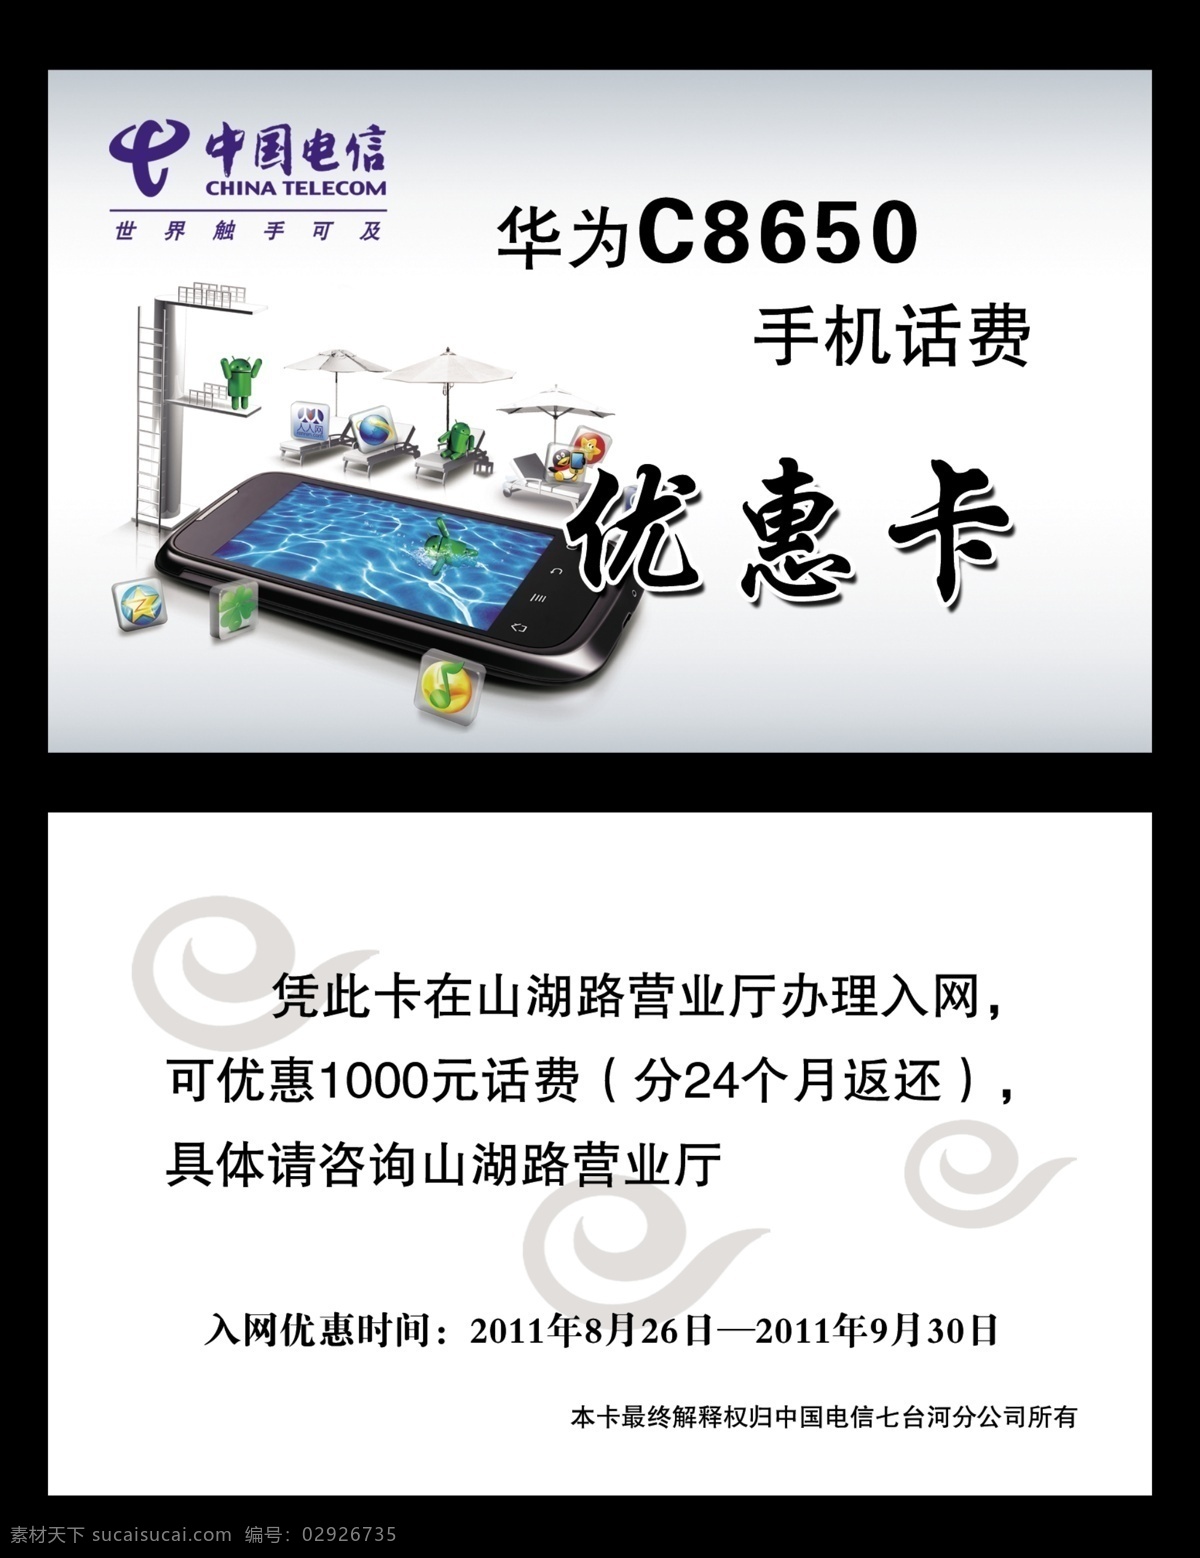 电信优惠卡 电信 优惠卡 华为 c8650 中国电信 标识 手机 卡片 源文件